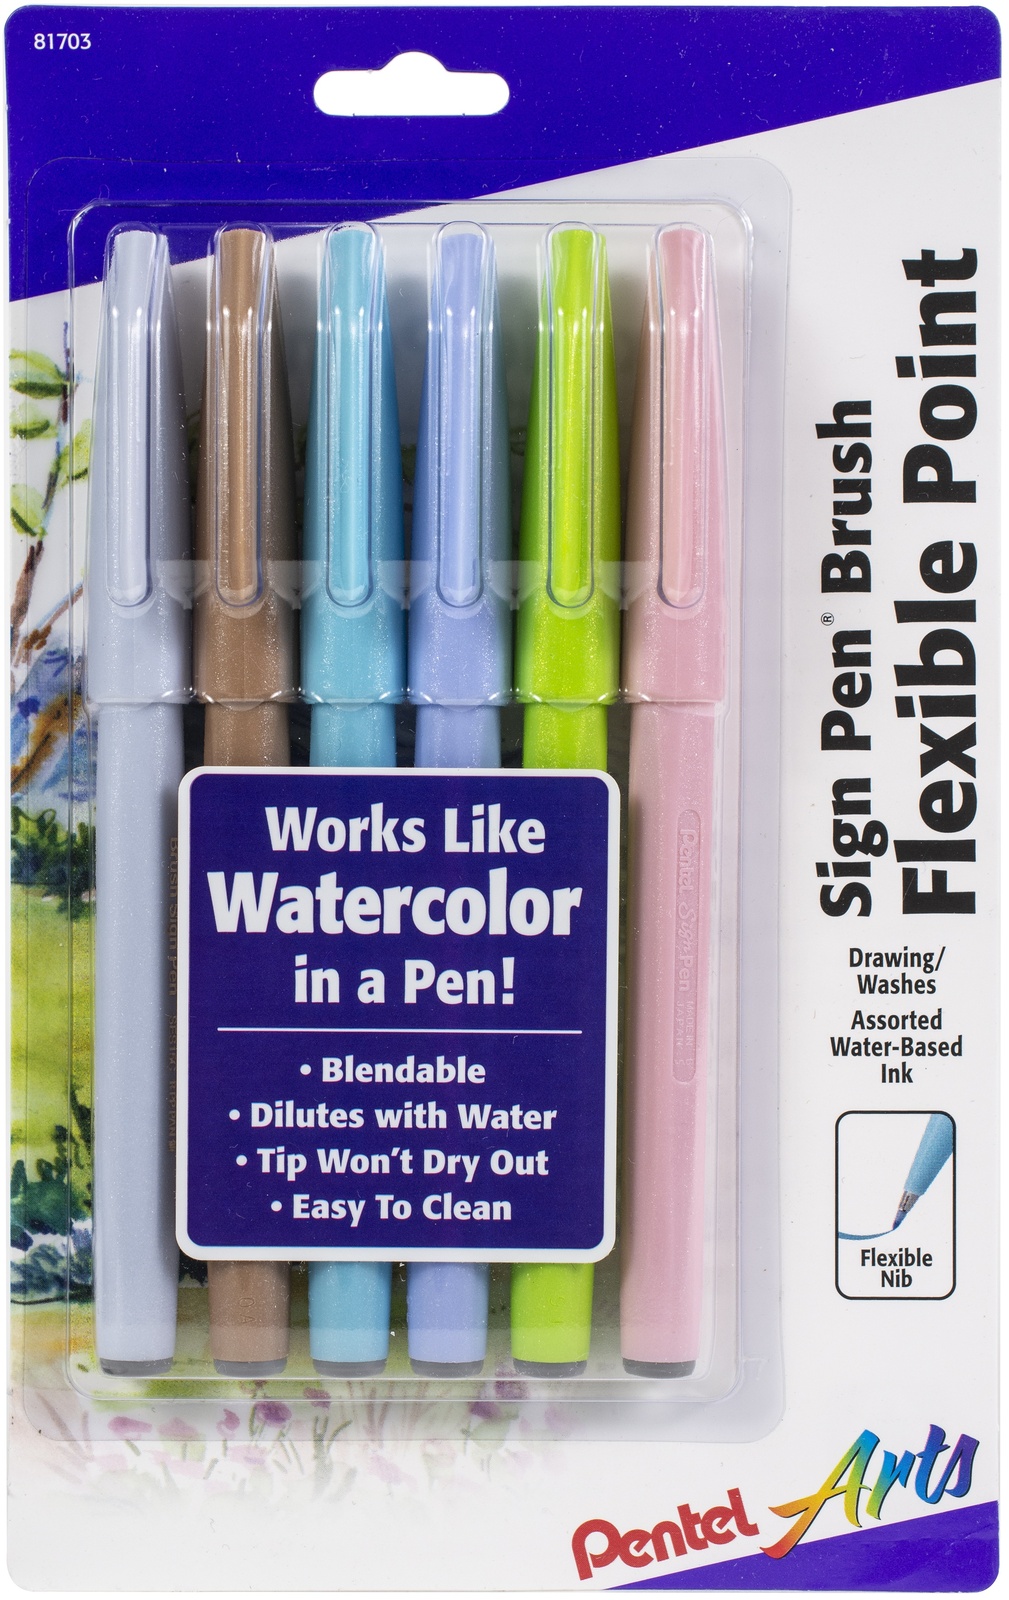  Pentel Arts Color Pen, 12-Color Set (S360-12